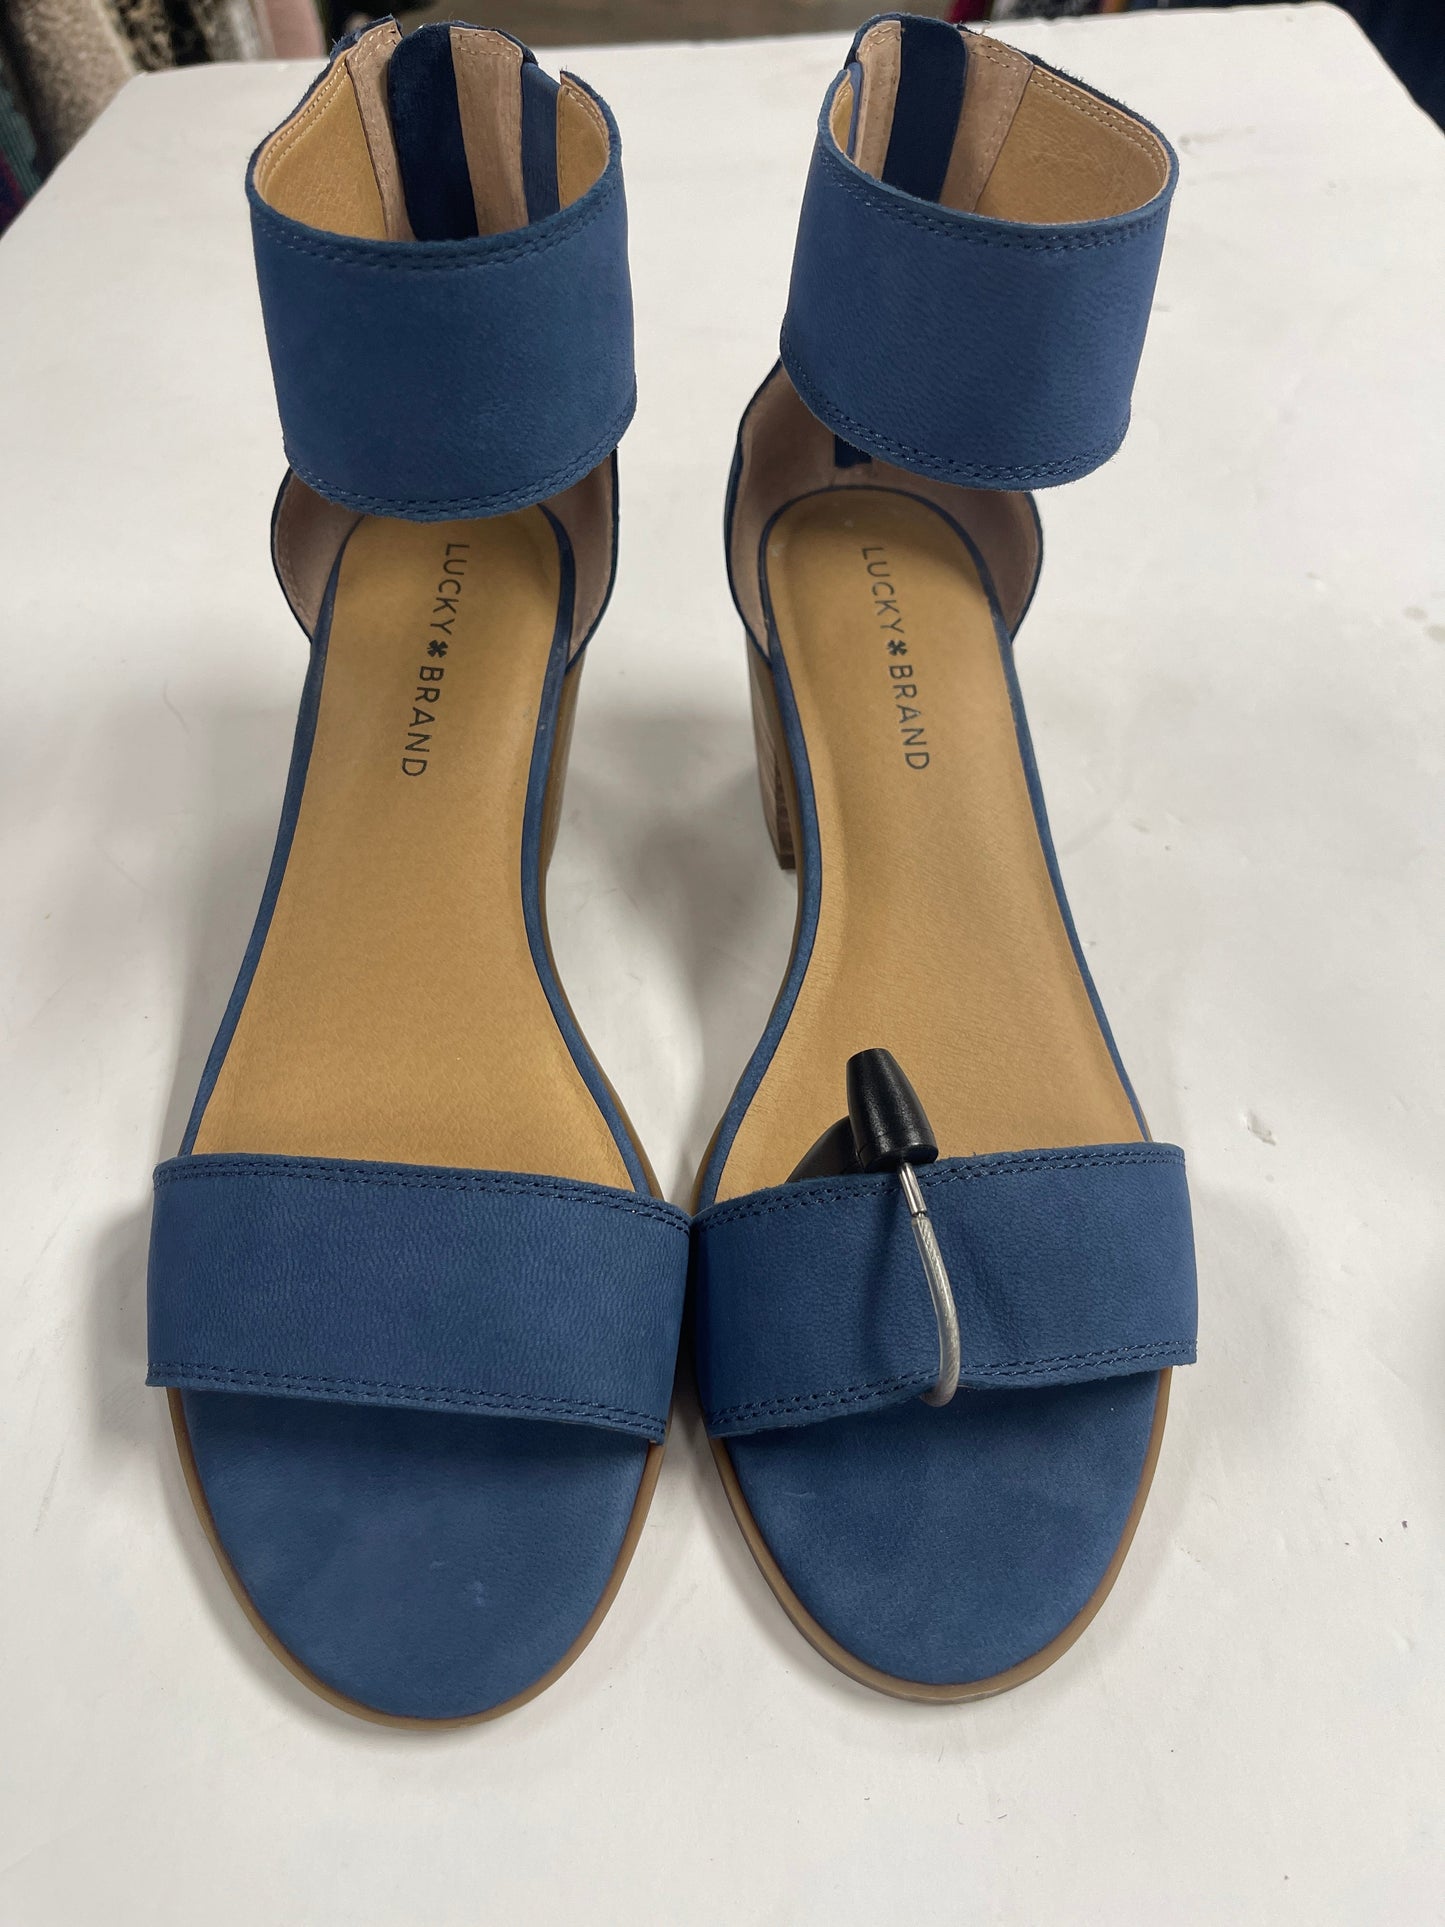 Blue Sandals Heels Block Lucky Brand, Size 10